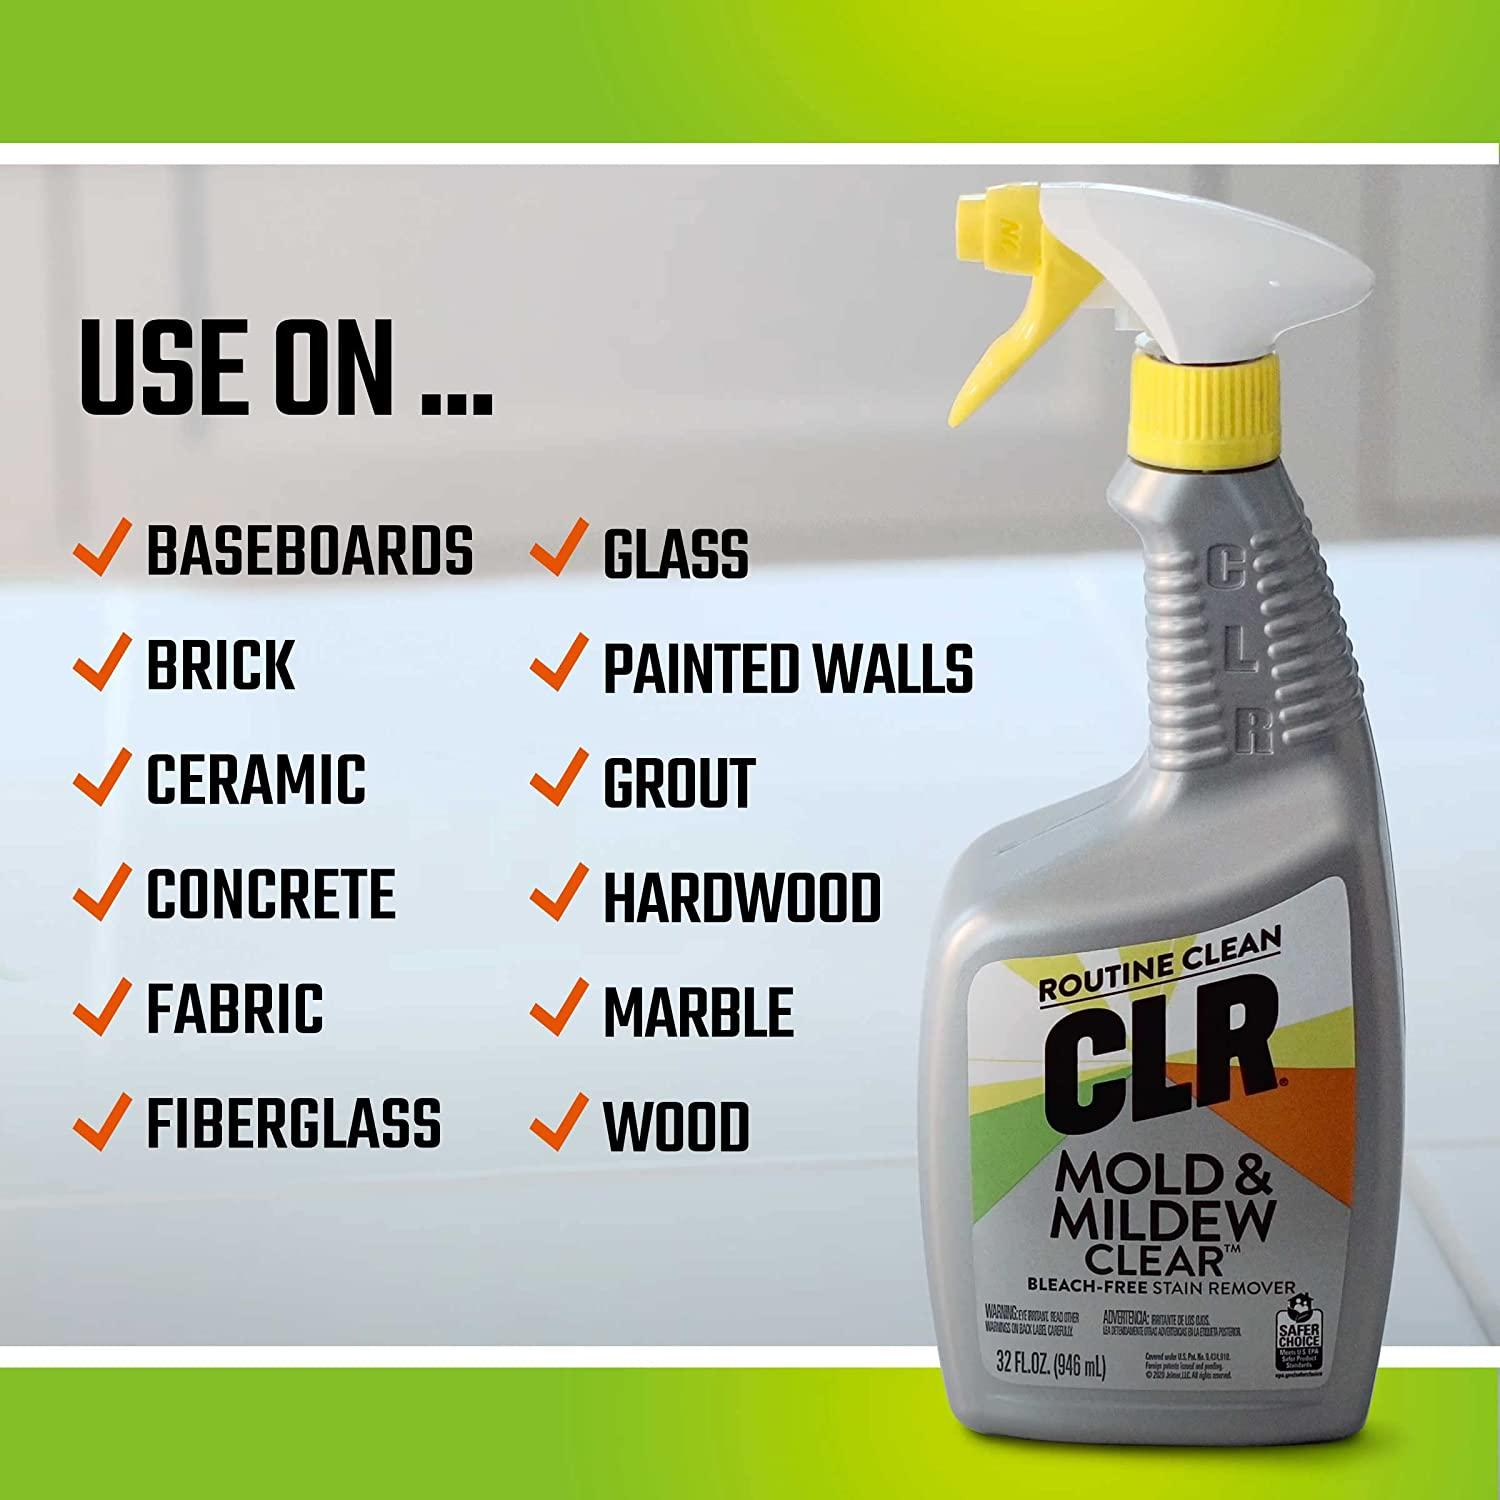 CLR - CLR, Mold & Mildew Clear - Stain Remover, Bleach-Free (32 fl oz), Shop